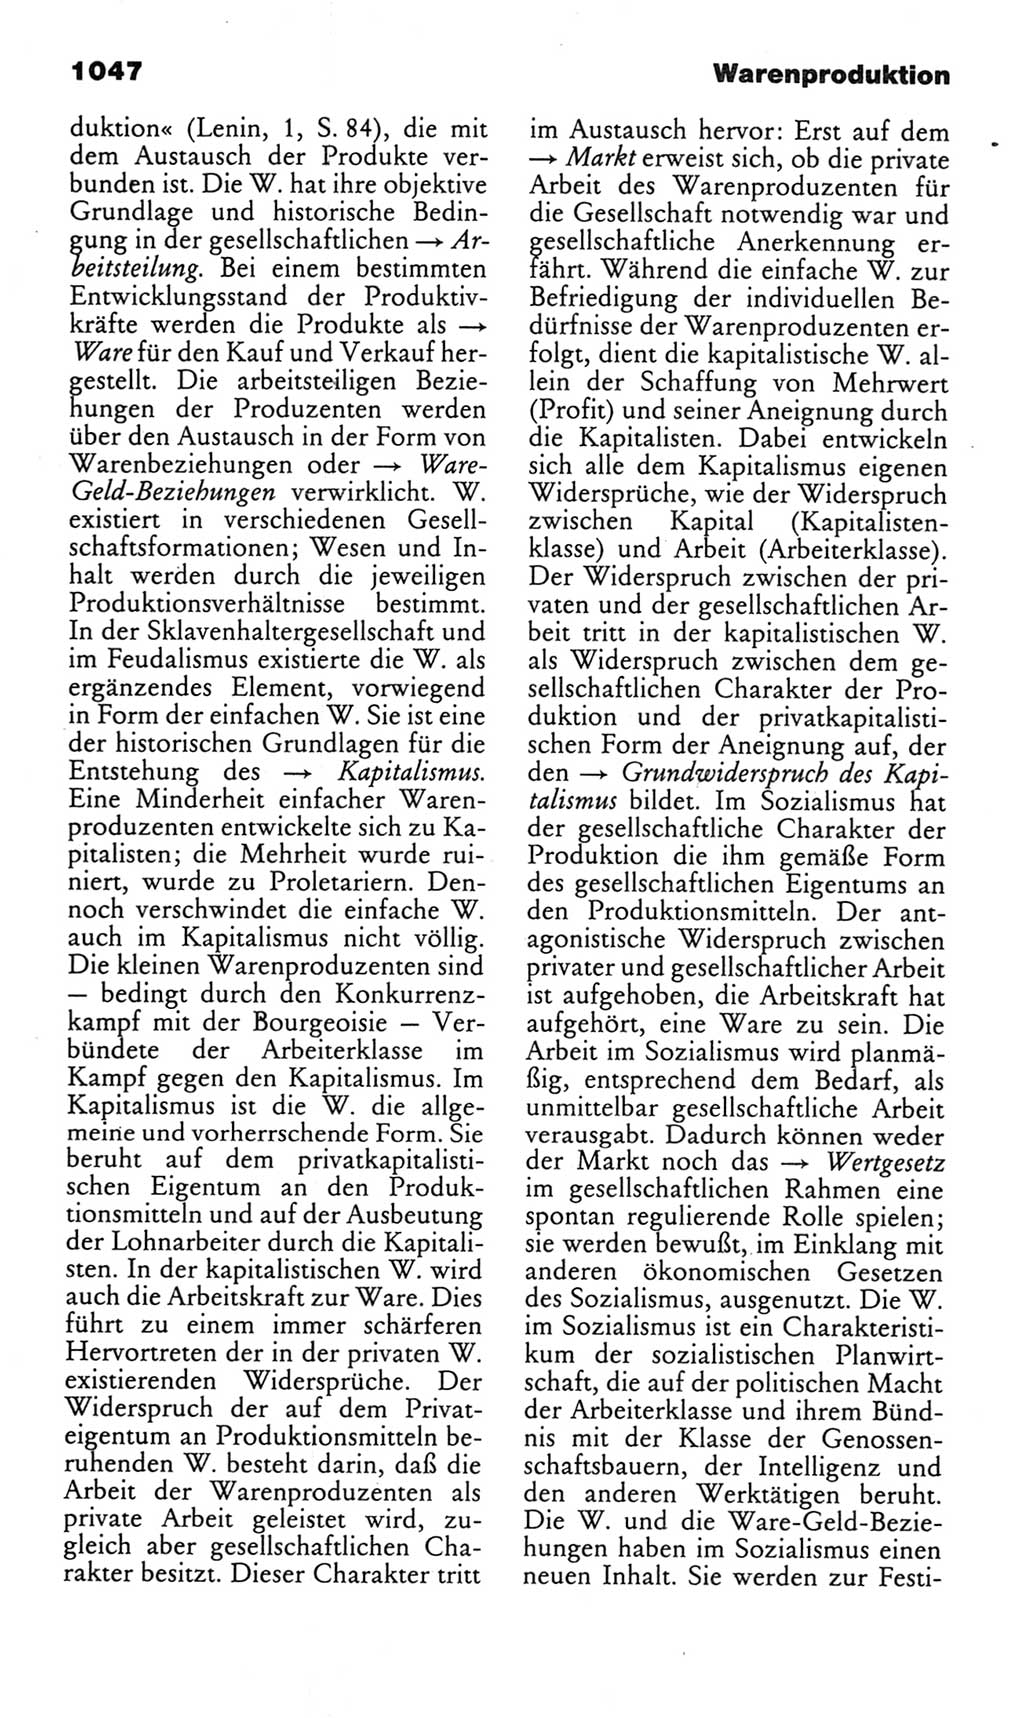 Kleines politisches Wörterbuch [Deutsche Demokratische Republik (DDR)] 1985, Seite 1047 (Kl. pol. Wb. DDR 1985, S. 1047)